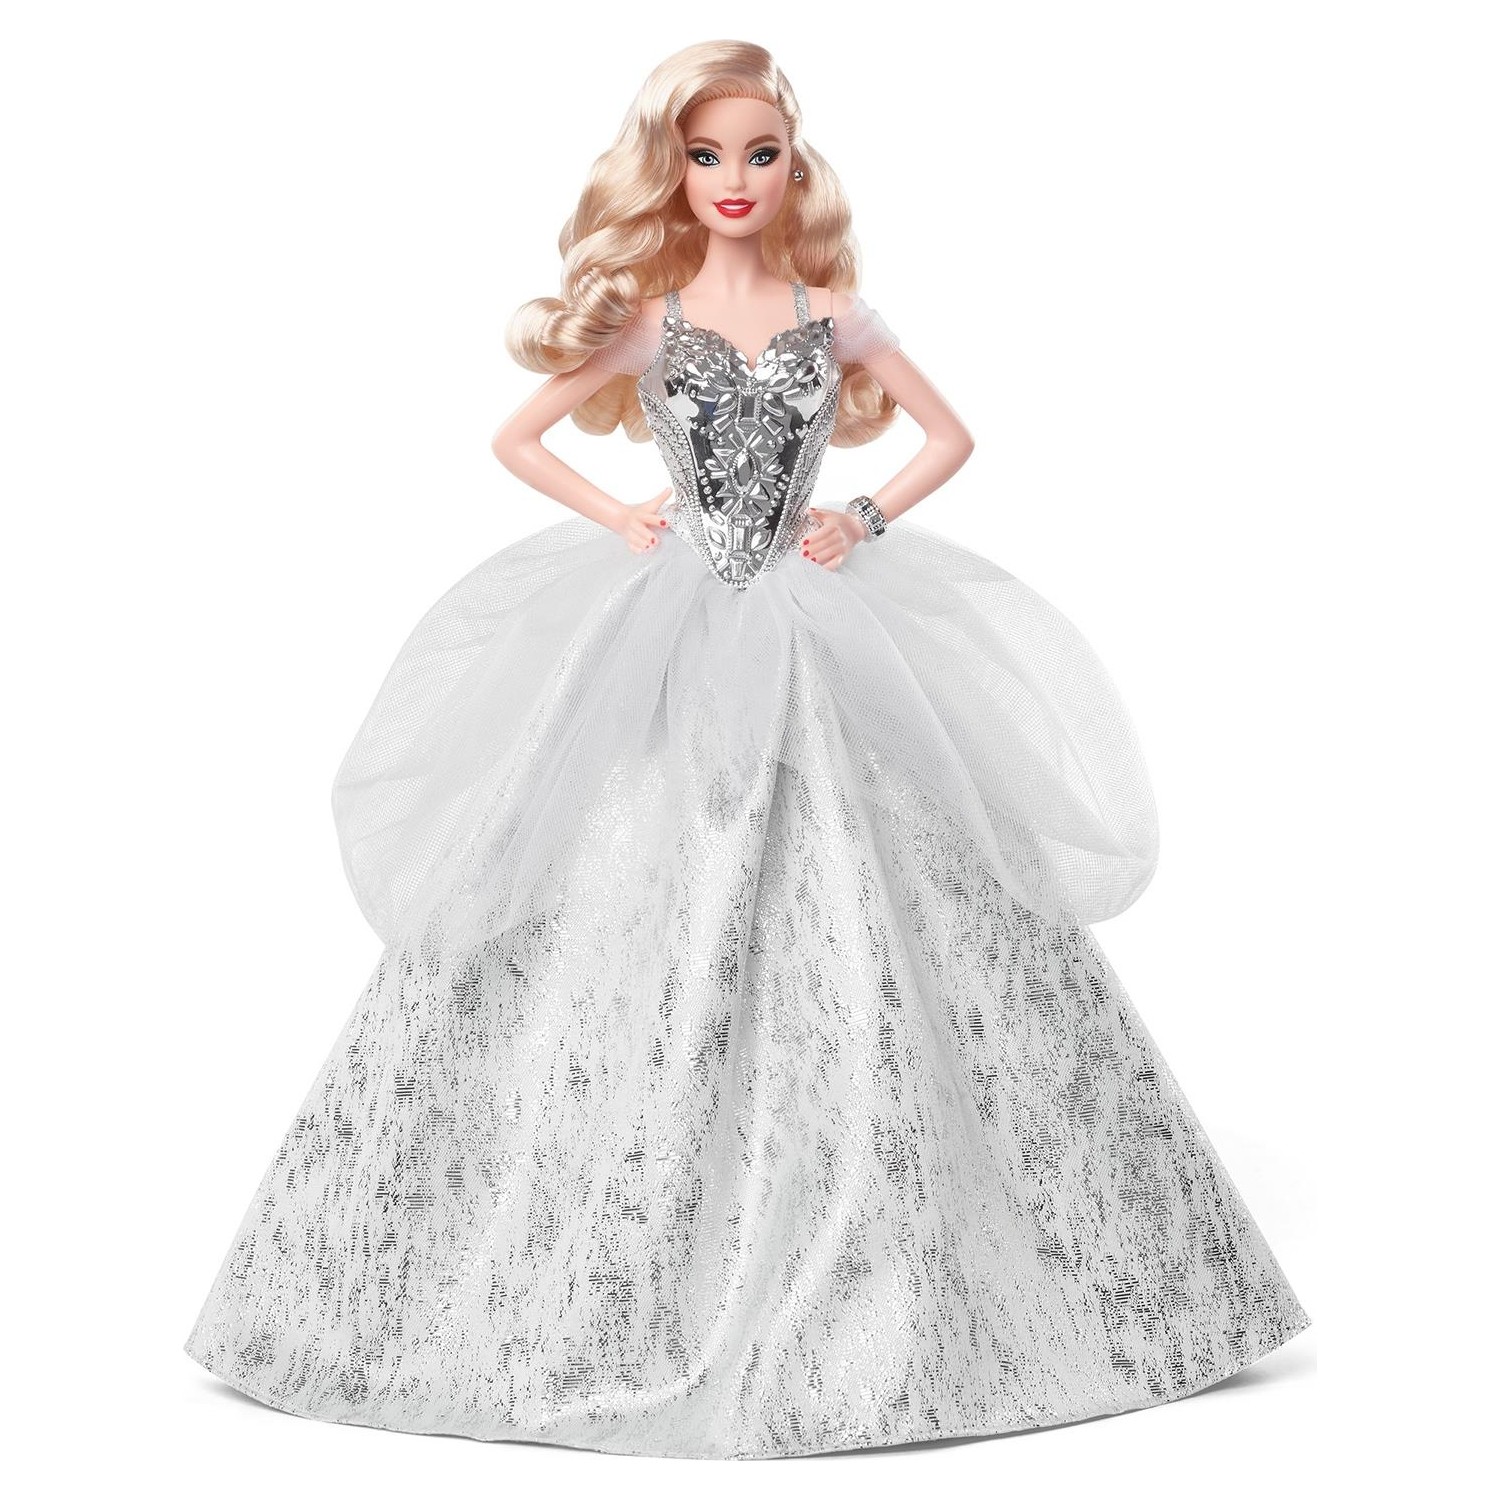 Кукла Barbie Holiday 2021 с волнистыми светлыми волосами кукла barbie экстра с волнистыми лавандовыми волосами с щеночком hhn10